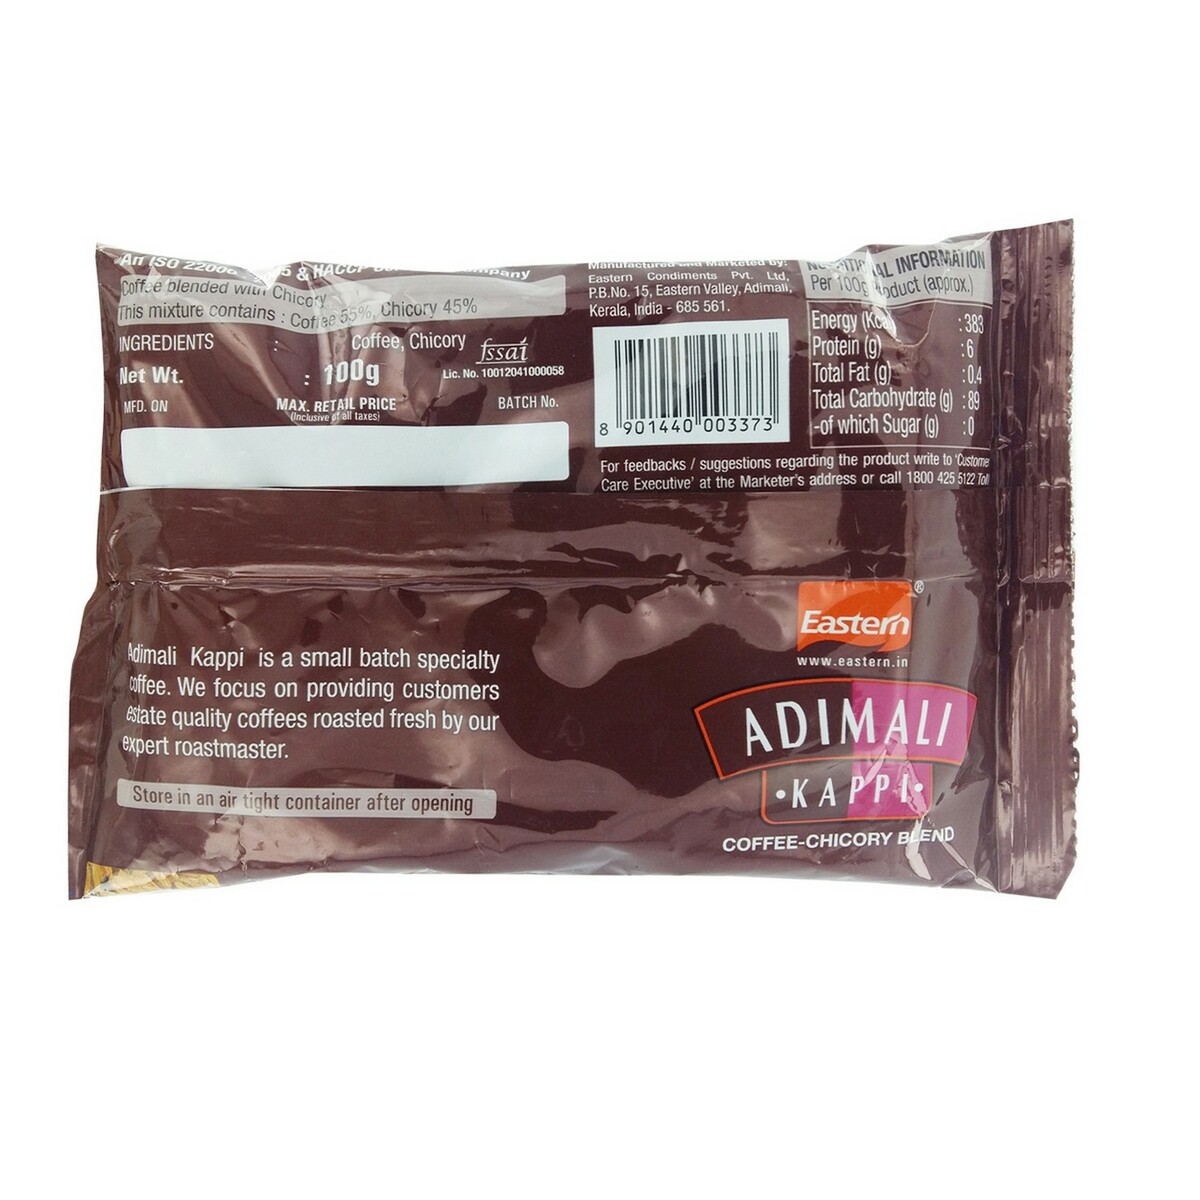 Eastern Adimali Coffee Powder 100g